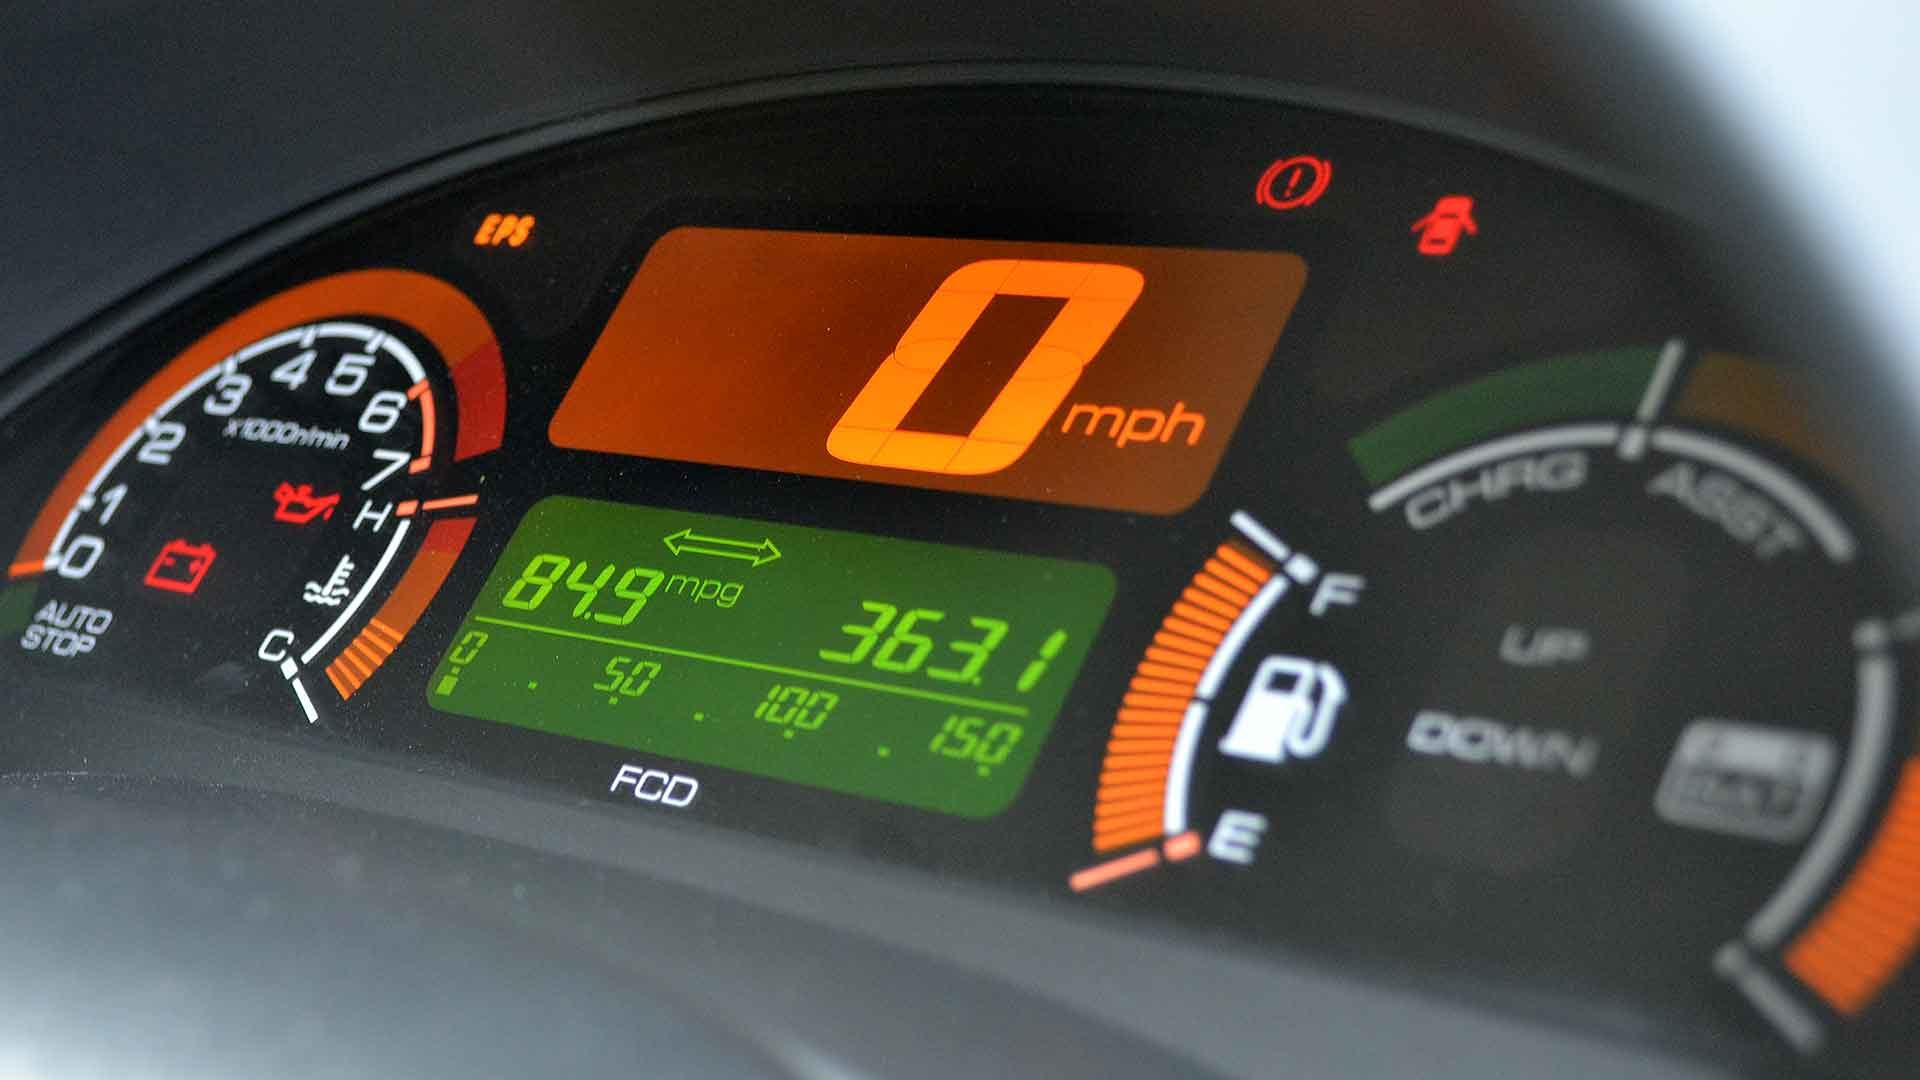 Honda Insight mpg display